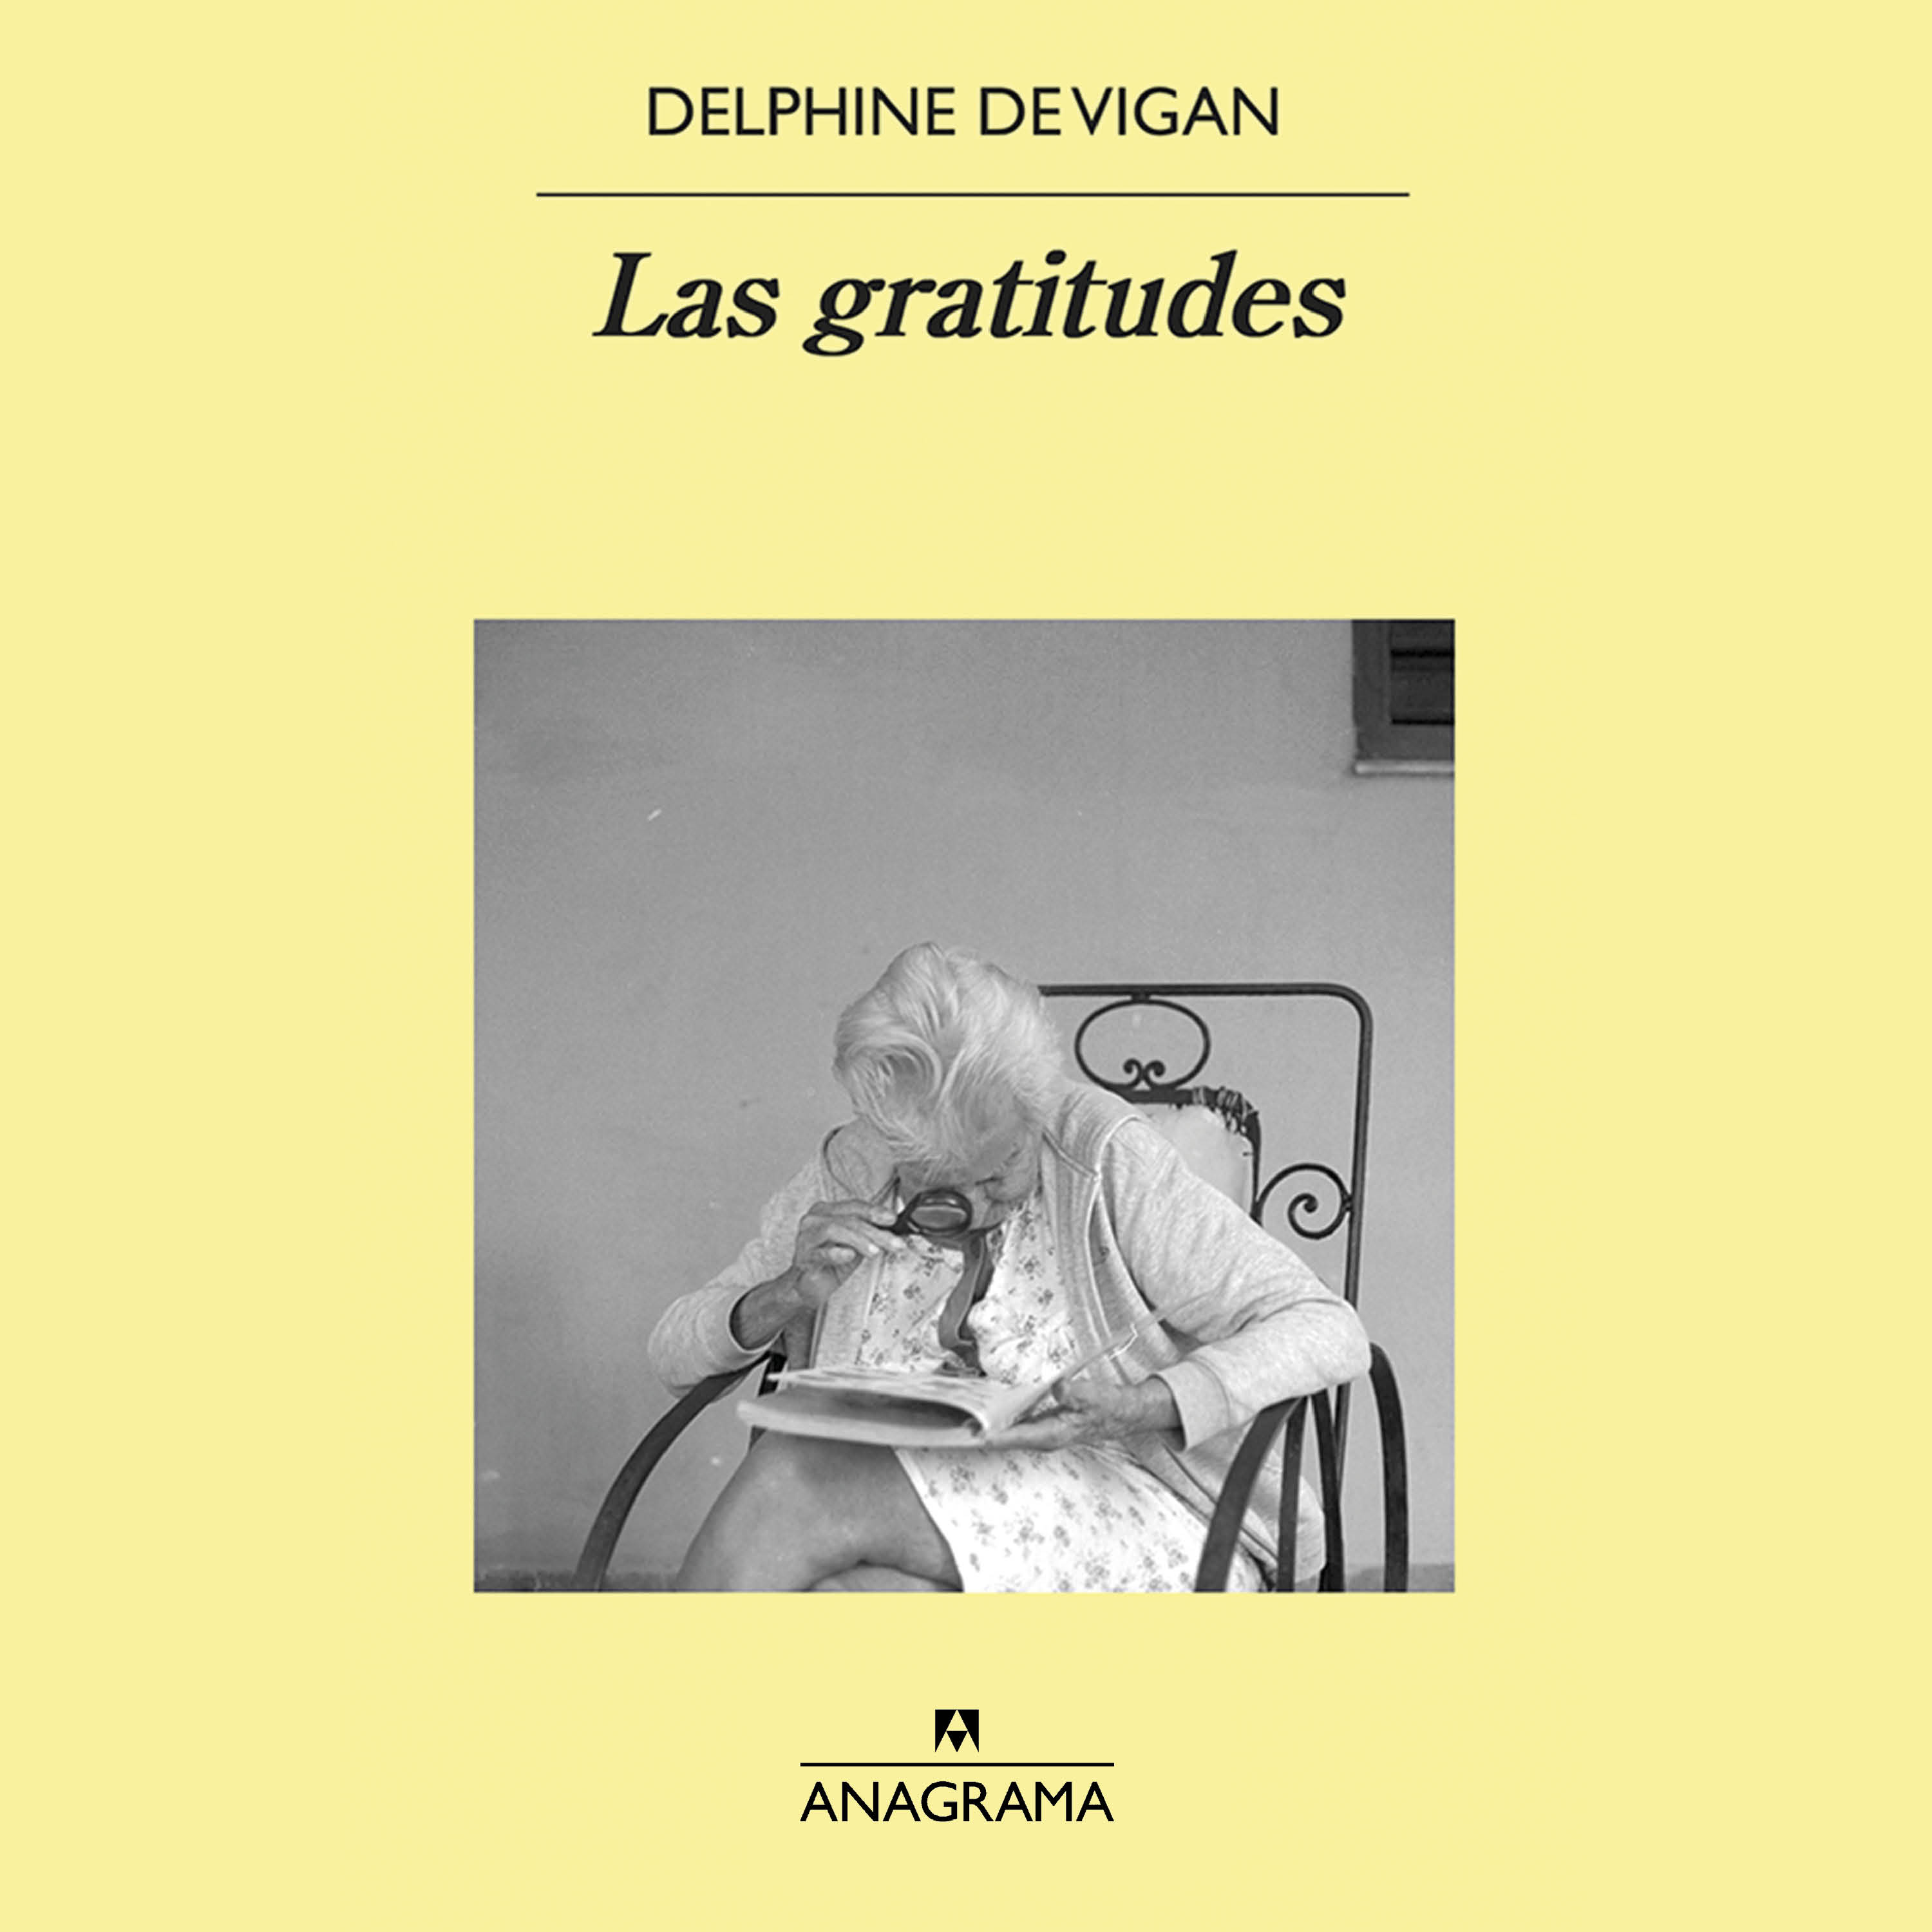 Las gratitudes - Vigan, Delphine de - 978-84-339-8083-0 - Editorial Anagrama